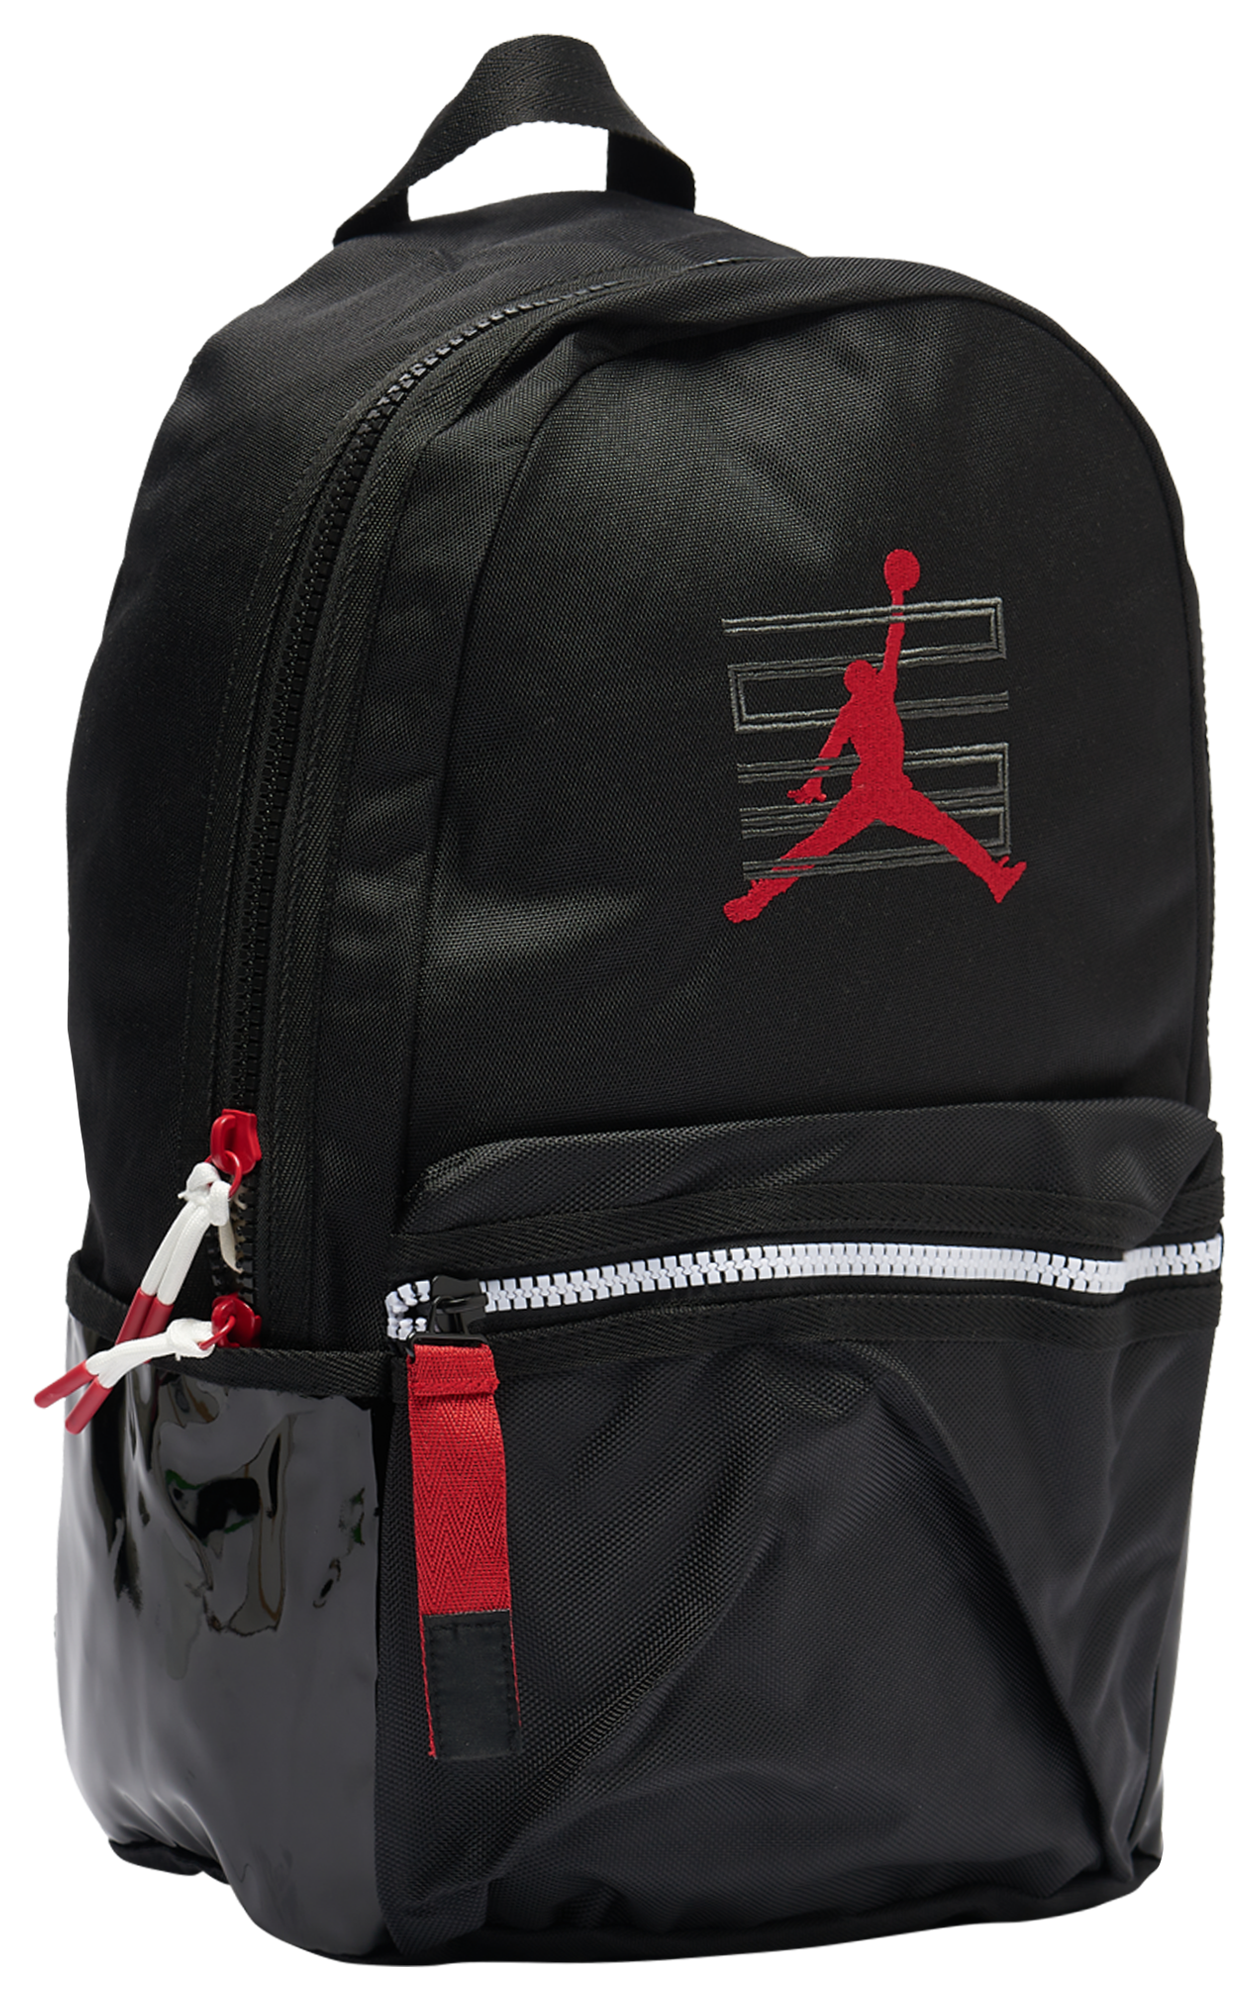 Jordan Retro 11 Backpack